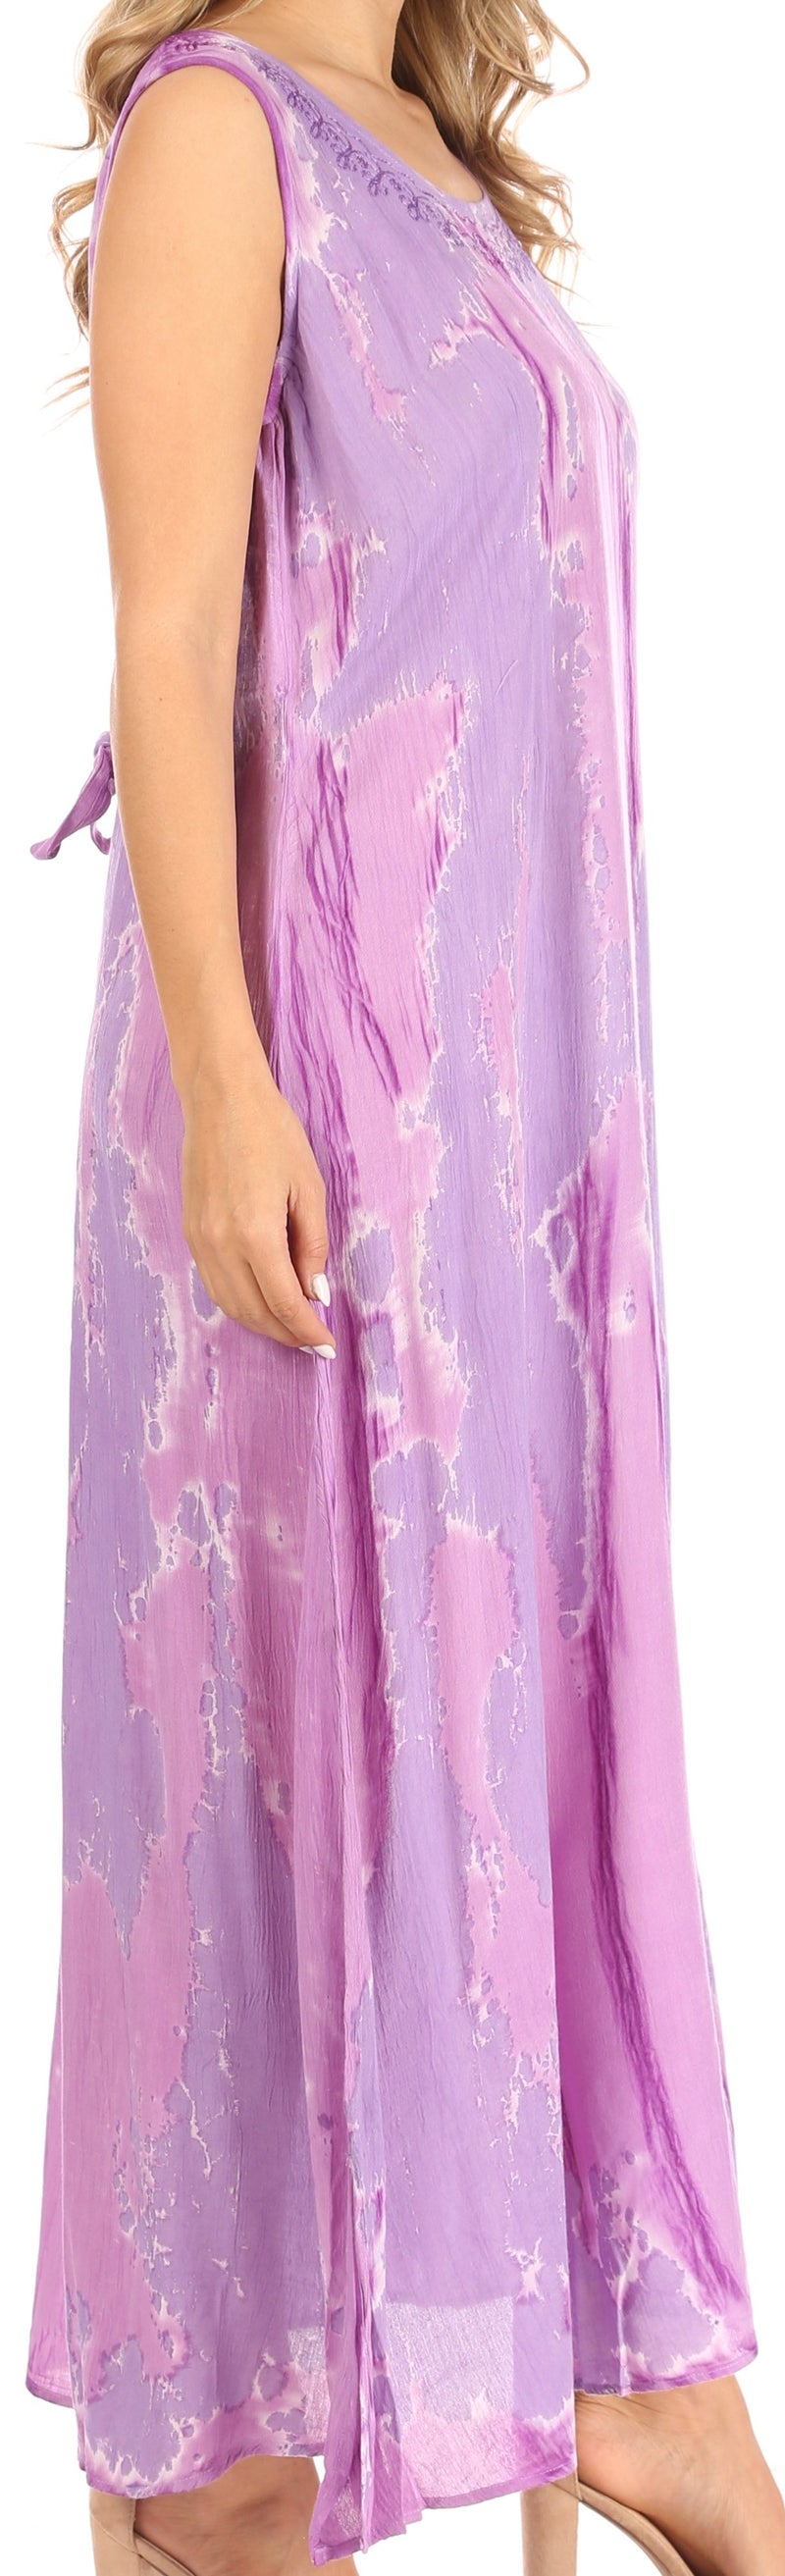 Sakkas Raquel Women's Casual Sleeveless Maxi Summer Caftan Column Dress Tie-Dye